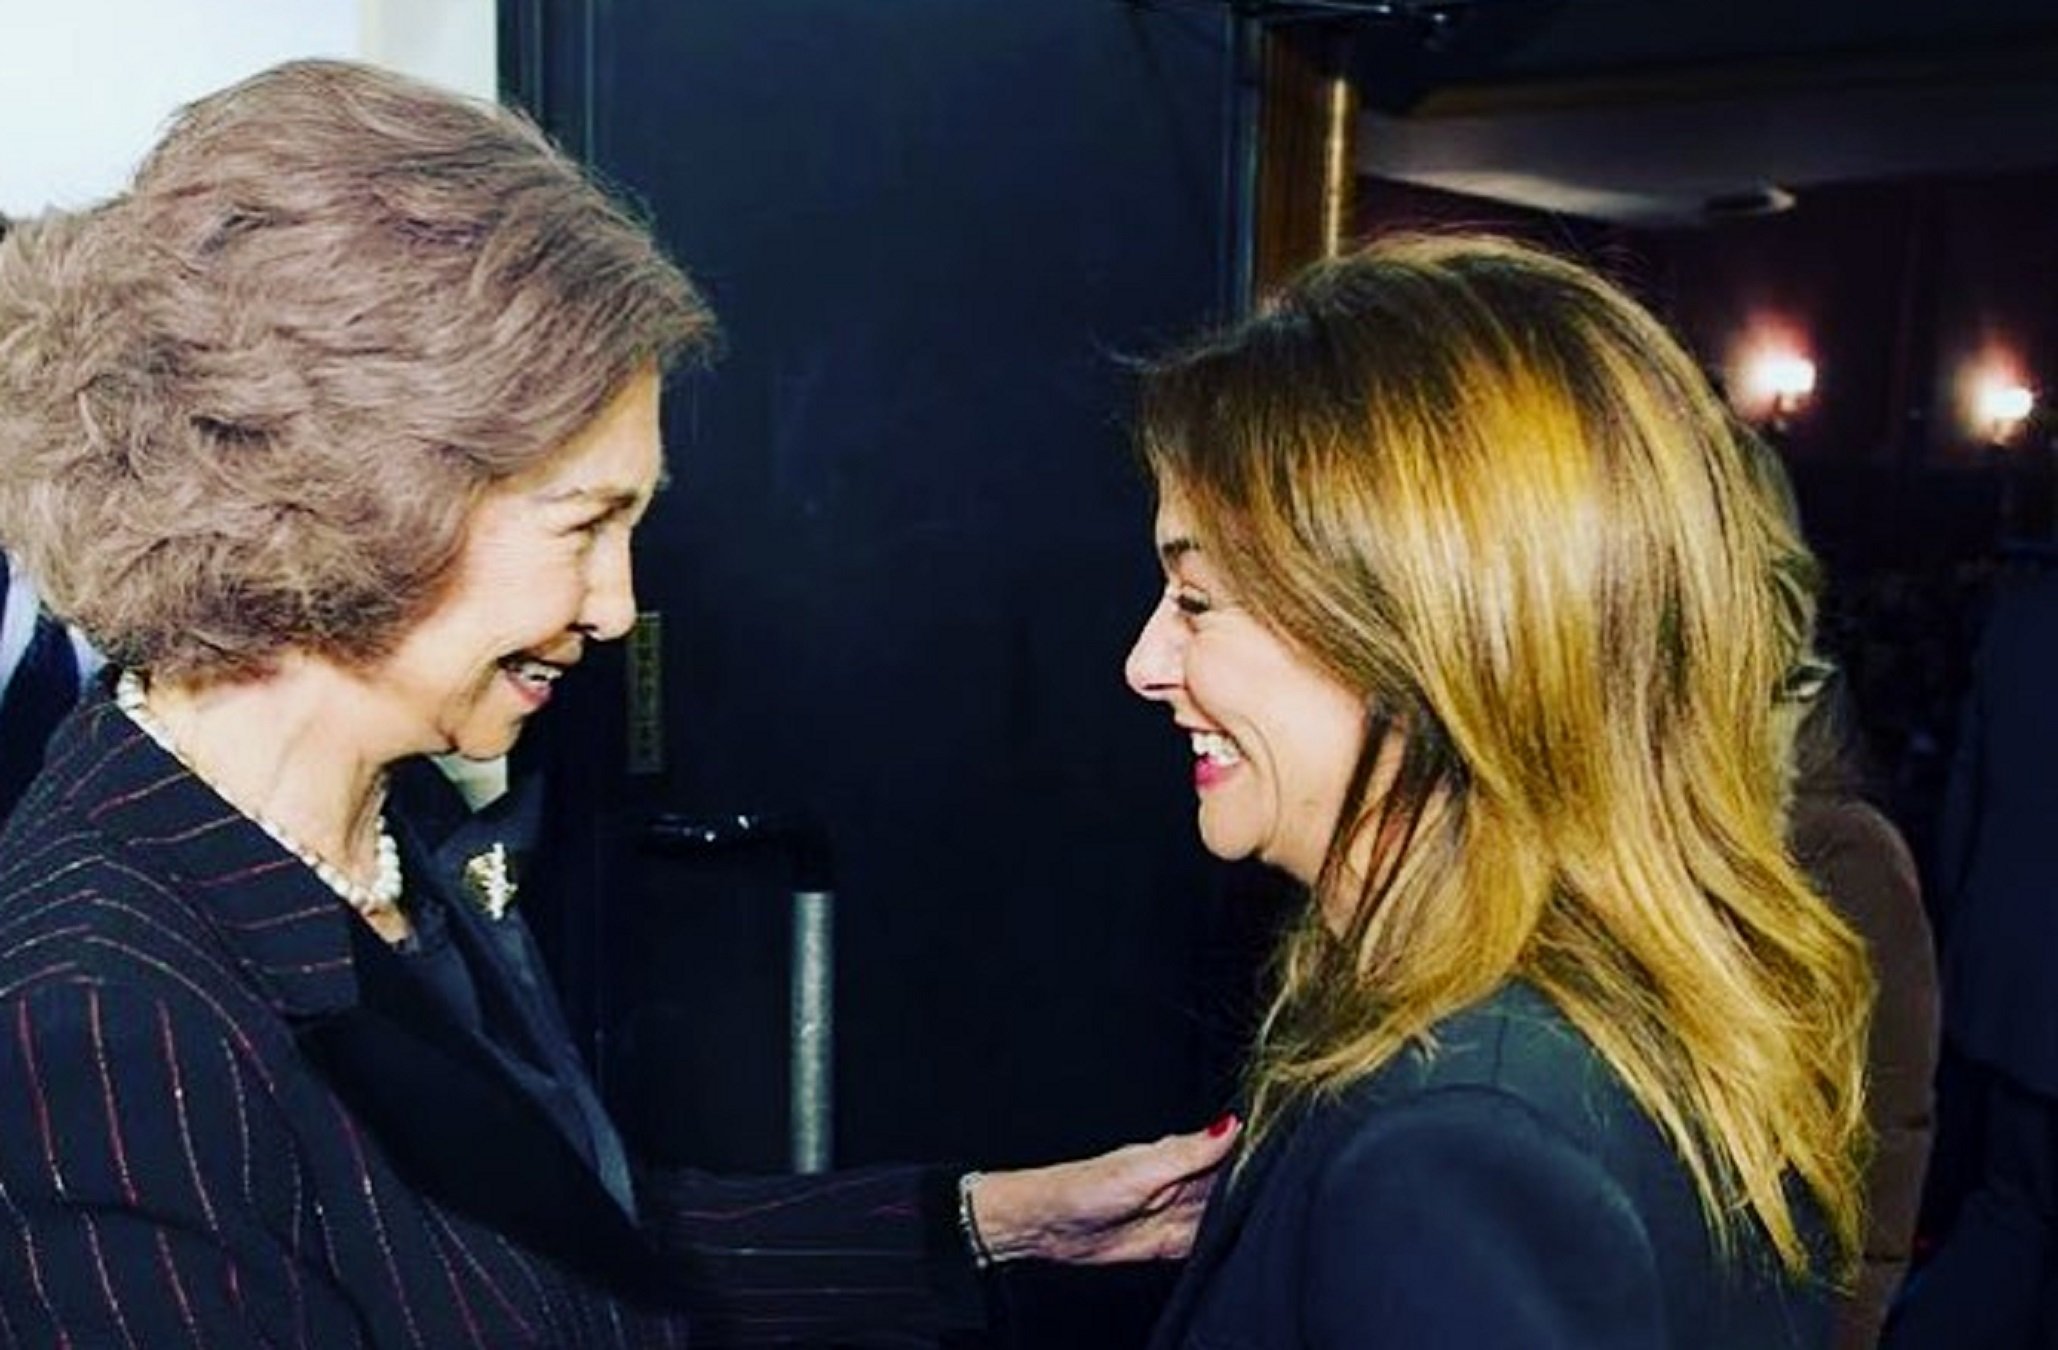 La reina Sofia truca a Toñi Moreno: “M’agrada el teu programa”